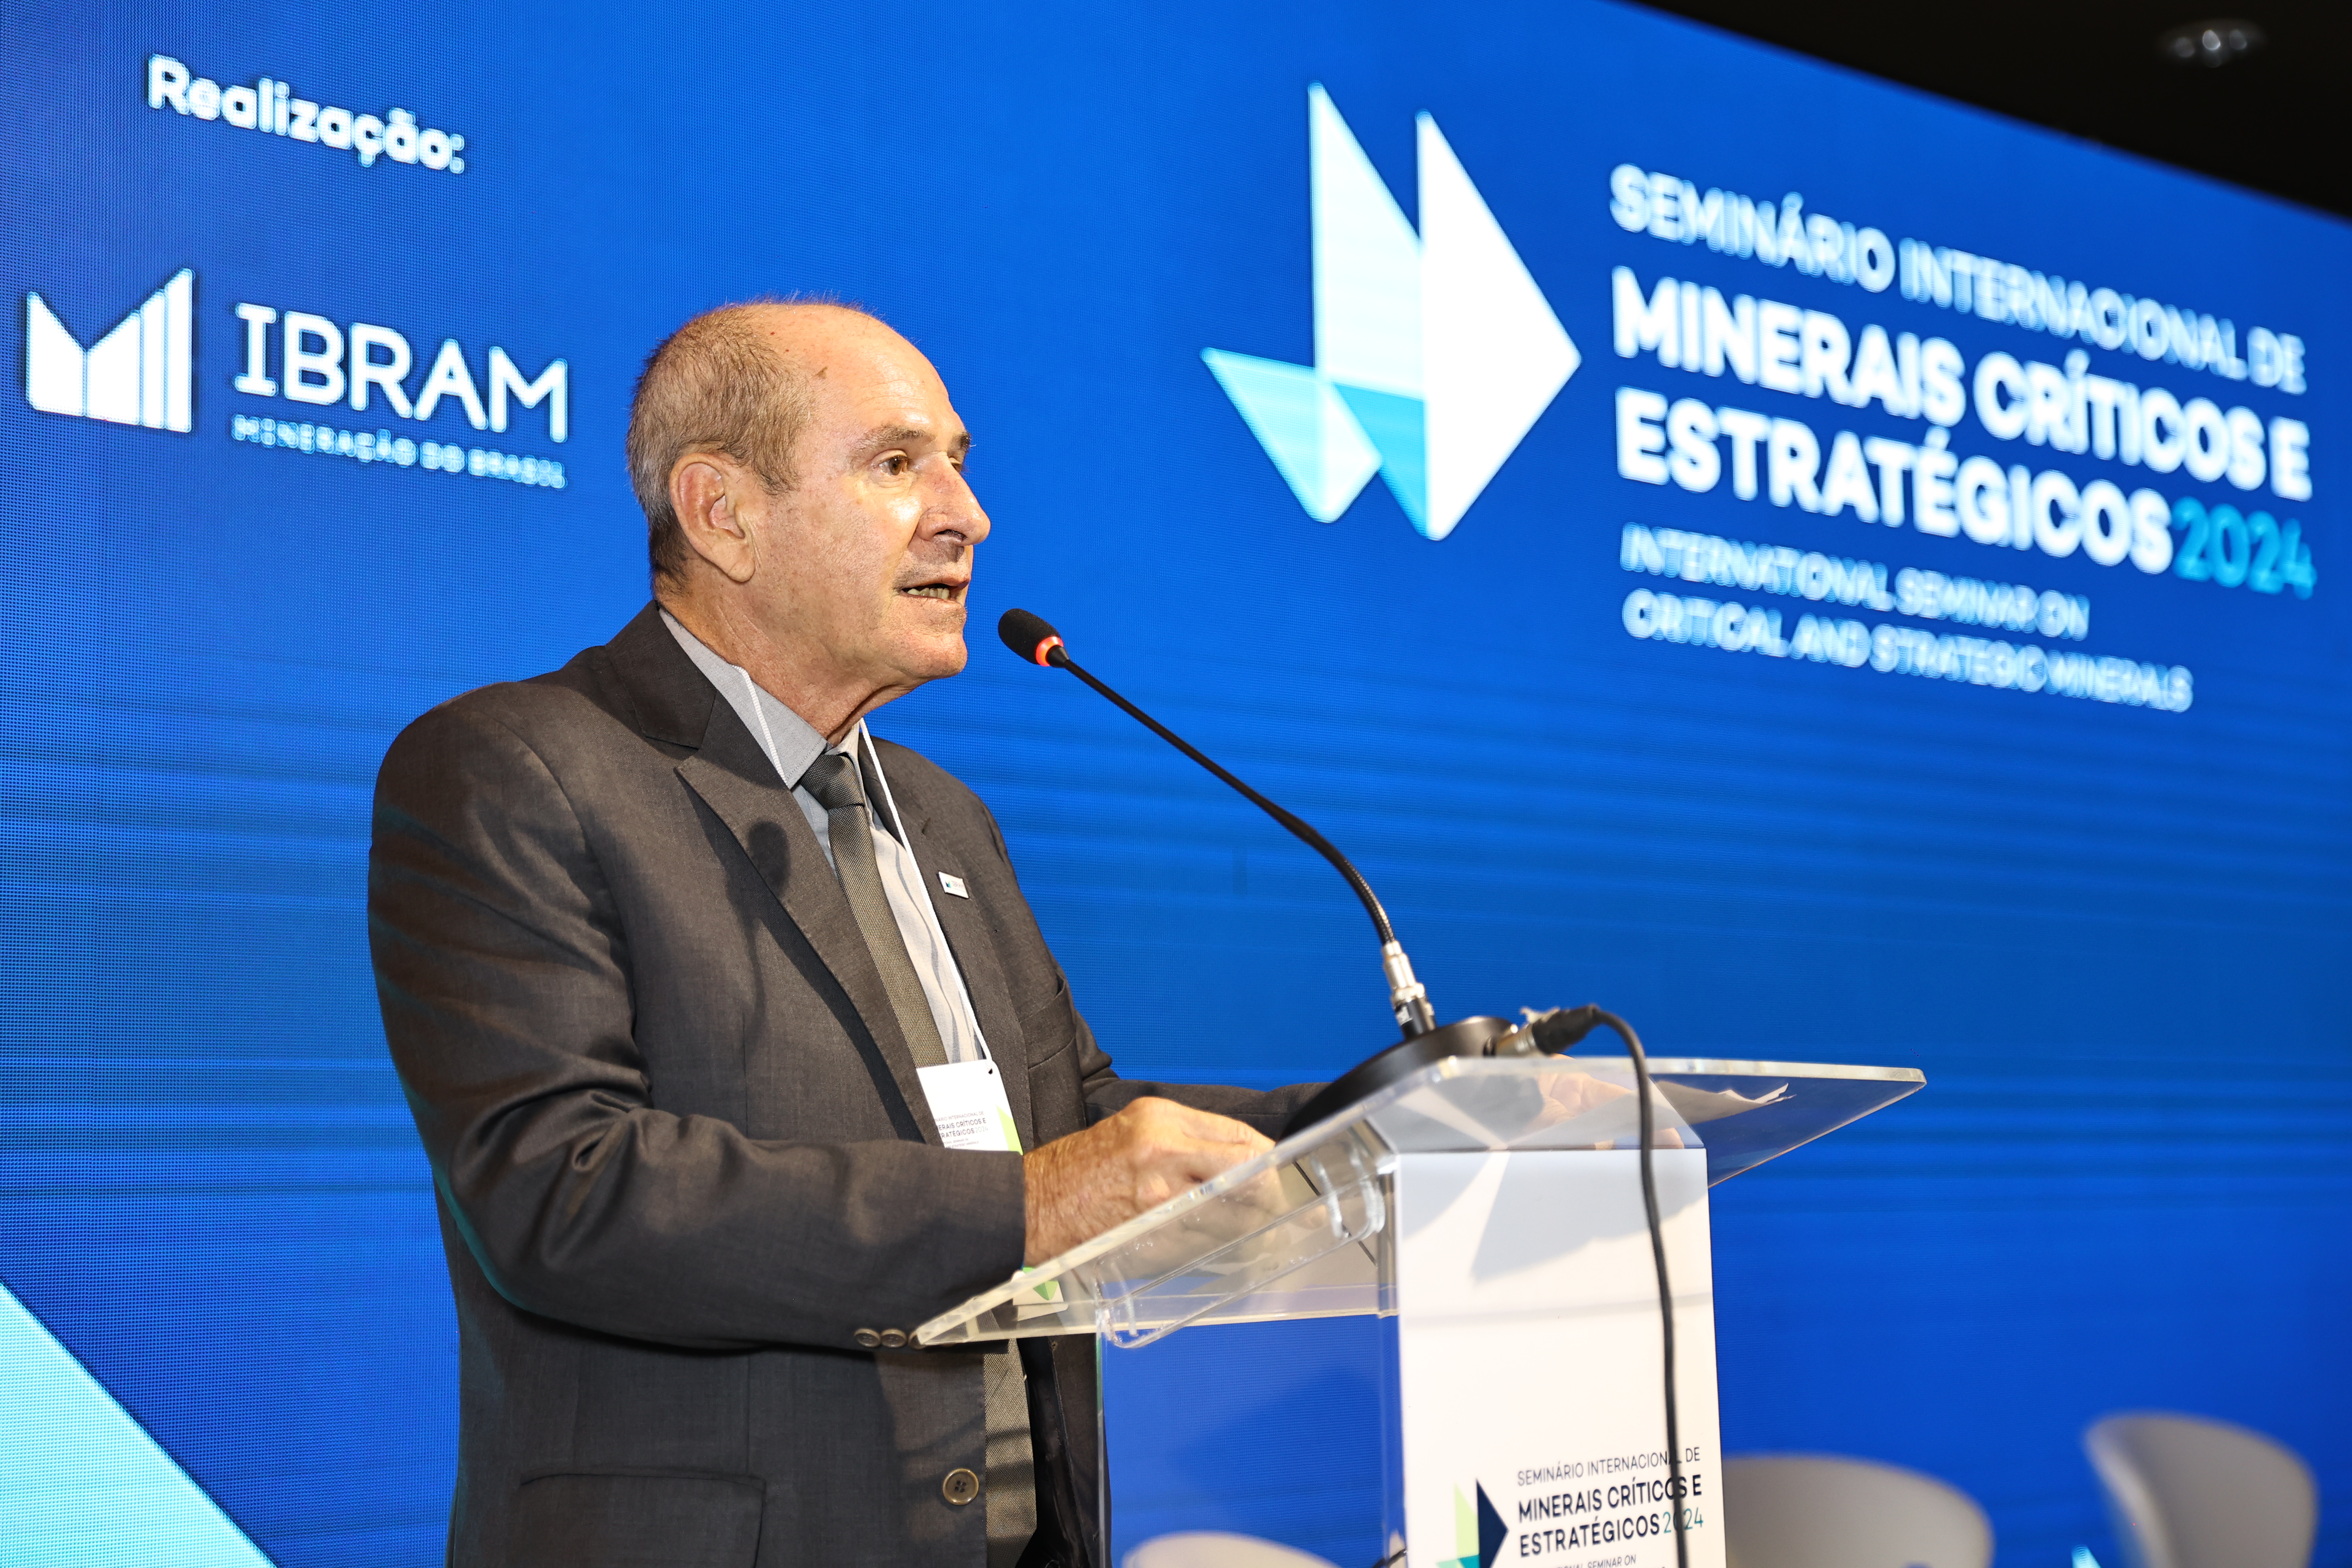 IBRAM: Brasil precisa ampliar oferta de minerais críticos e estratégicos